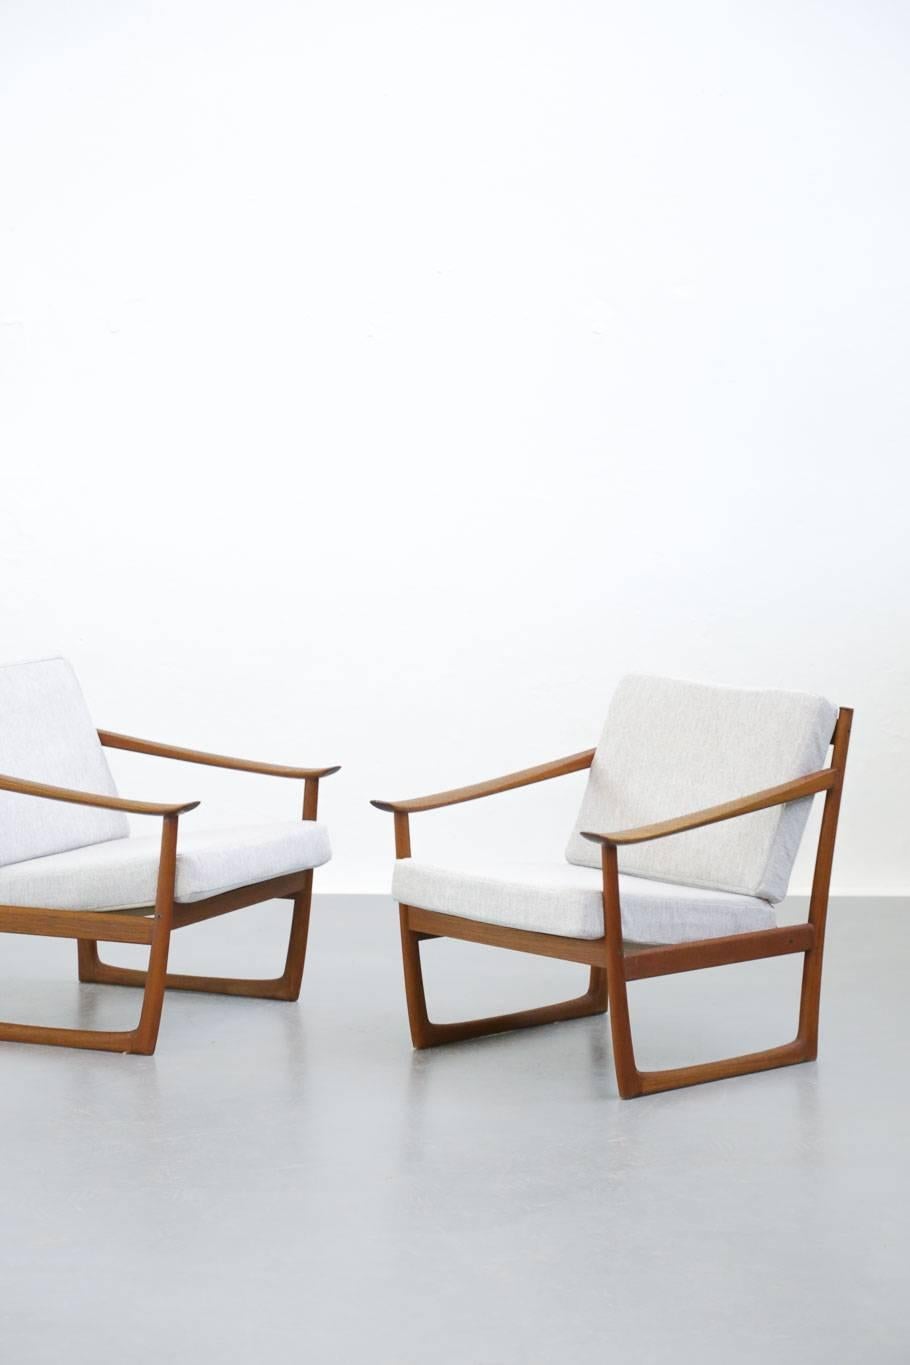 Scandinavian Modern Pair of Danish Modern Lounge Chair Peter Hvidt & Orla Mølgaard FD130